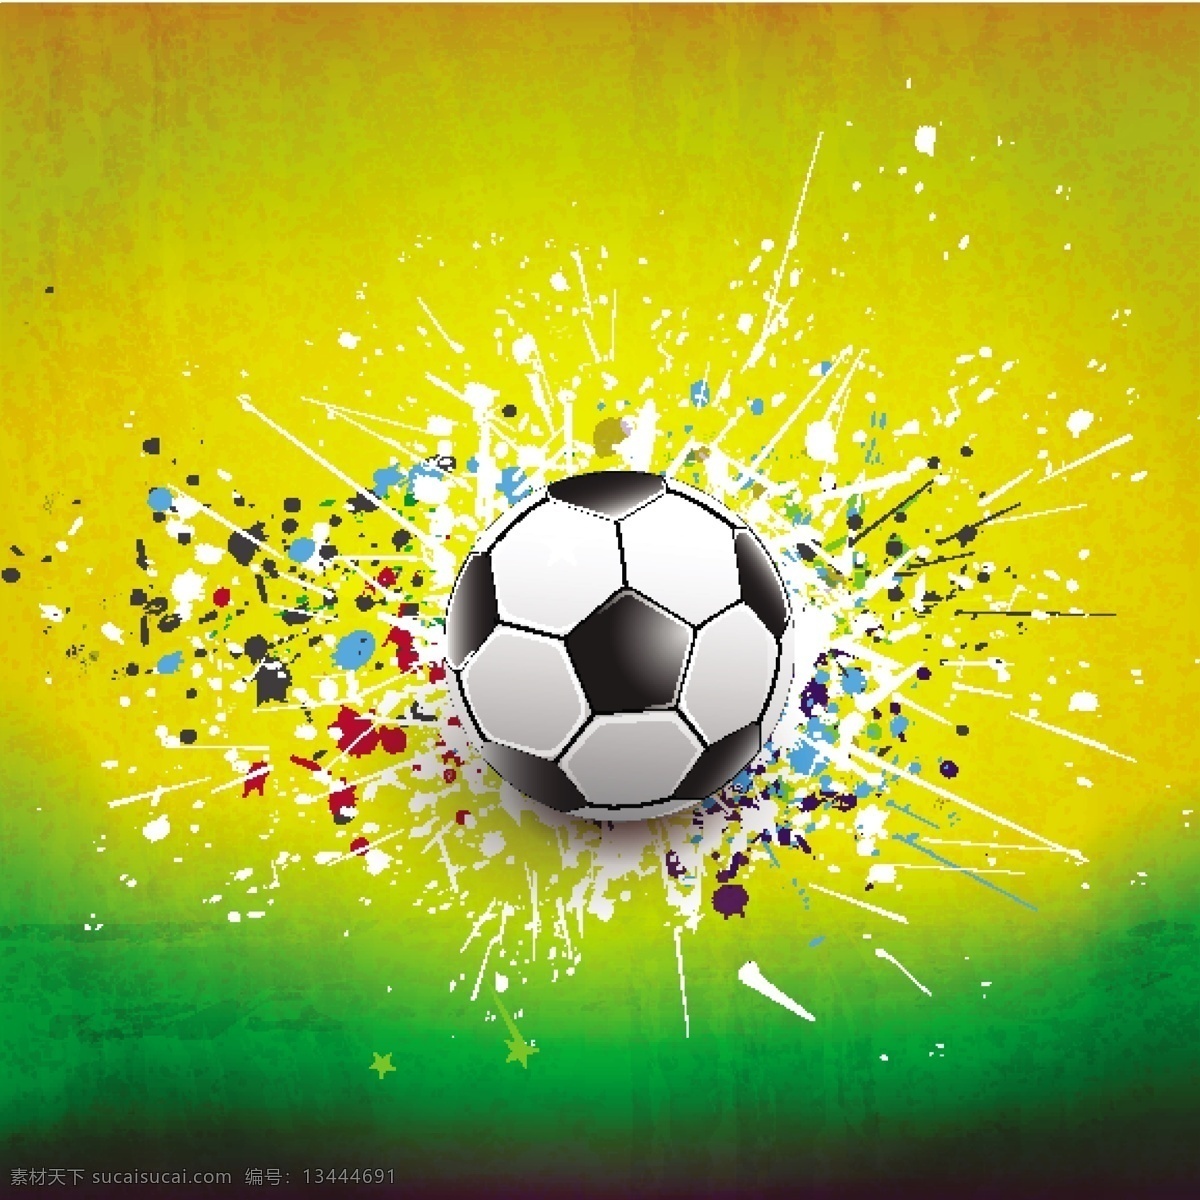 足球 欧洲世界杯 手绘 草坪 足球场 世界杯 欧洲杯 亚洲杯 世界杯海报 世界杯背景 足球俱乐部 足球运动